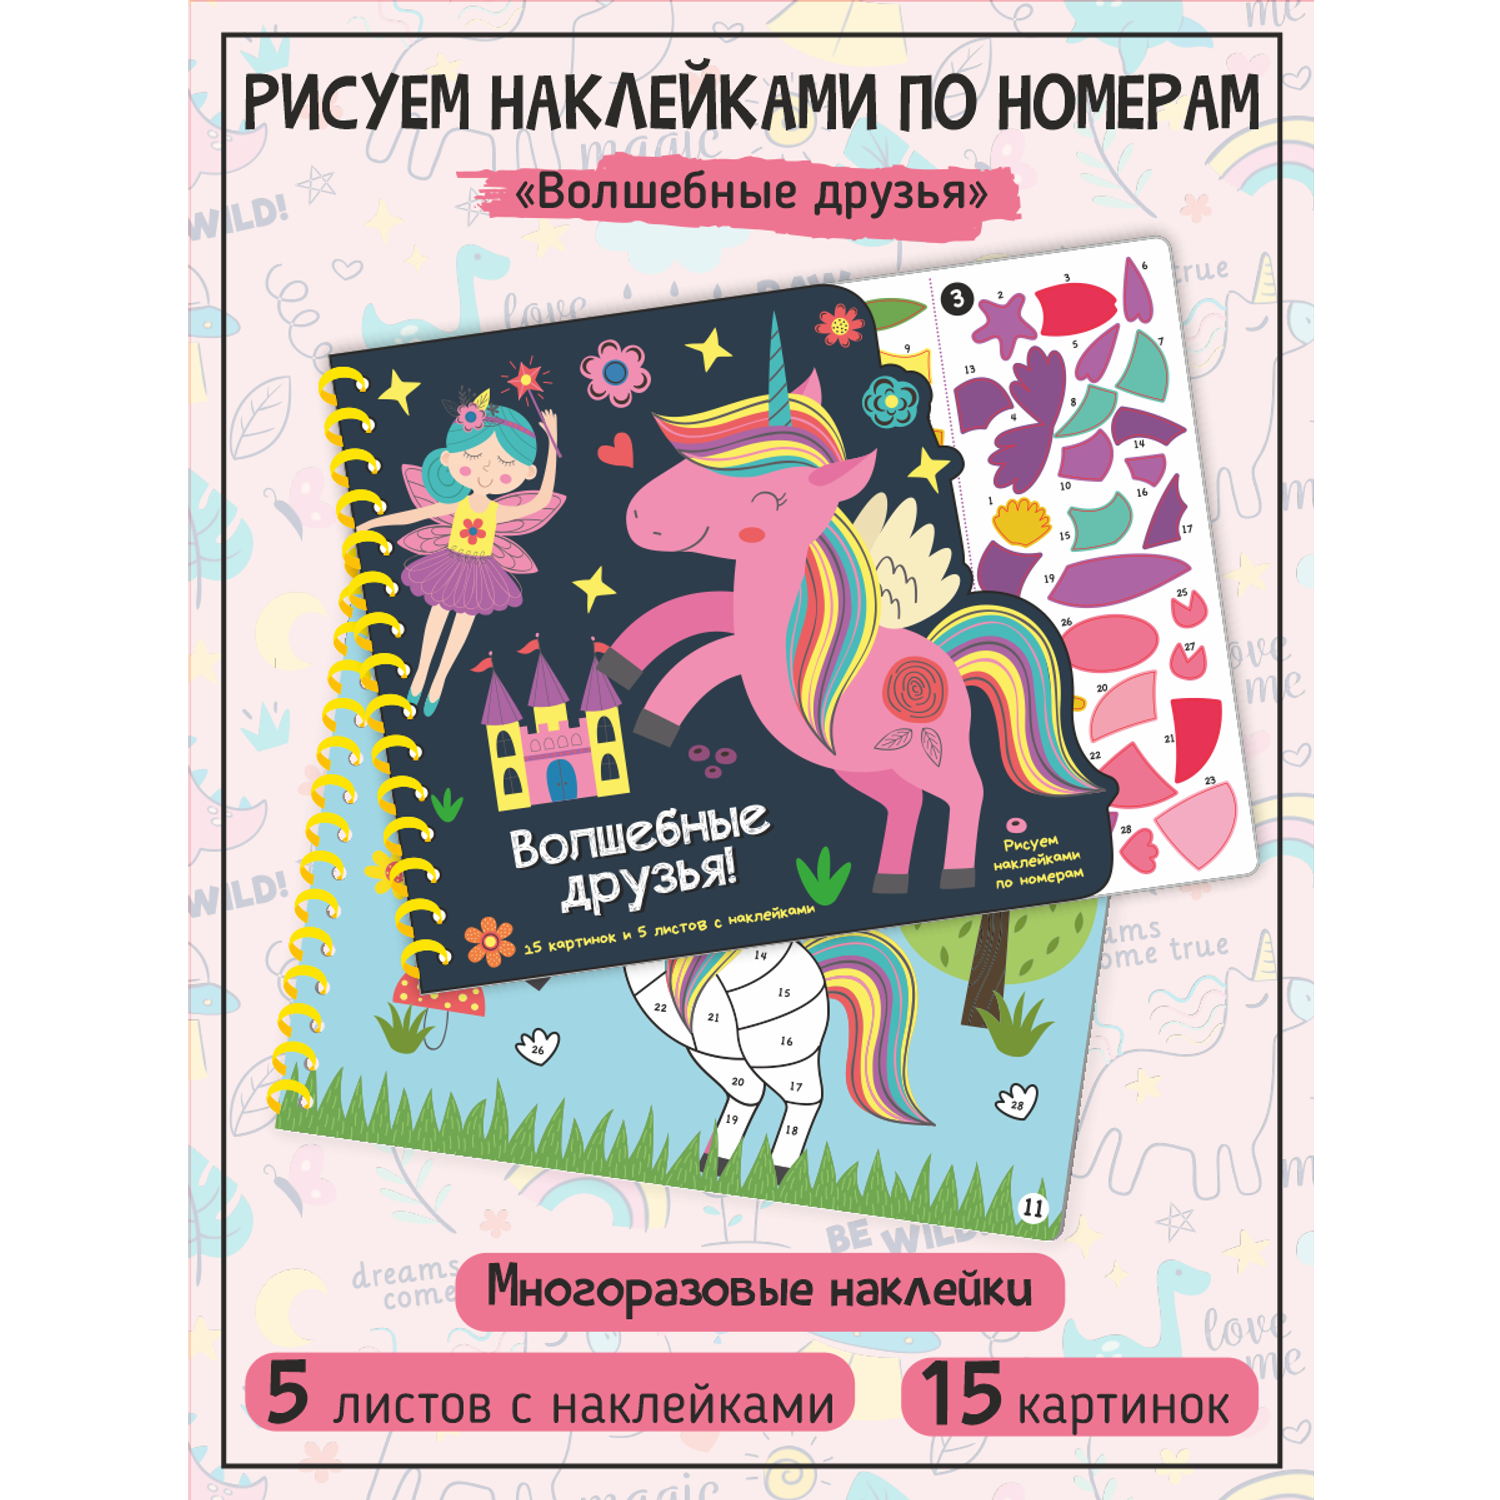 Раскраска по номерам Счастье внутри Рисуем наклейками Волшебные друзья - фото 1